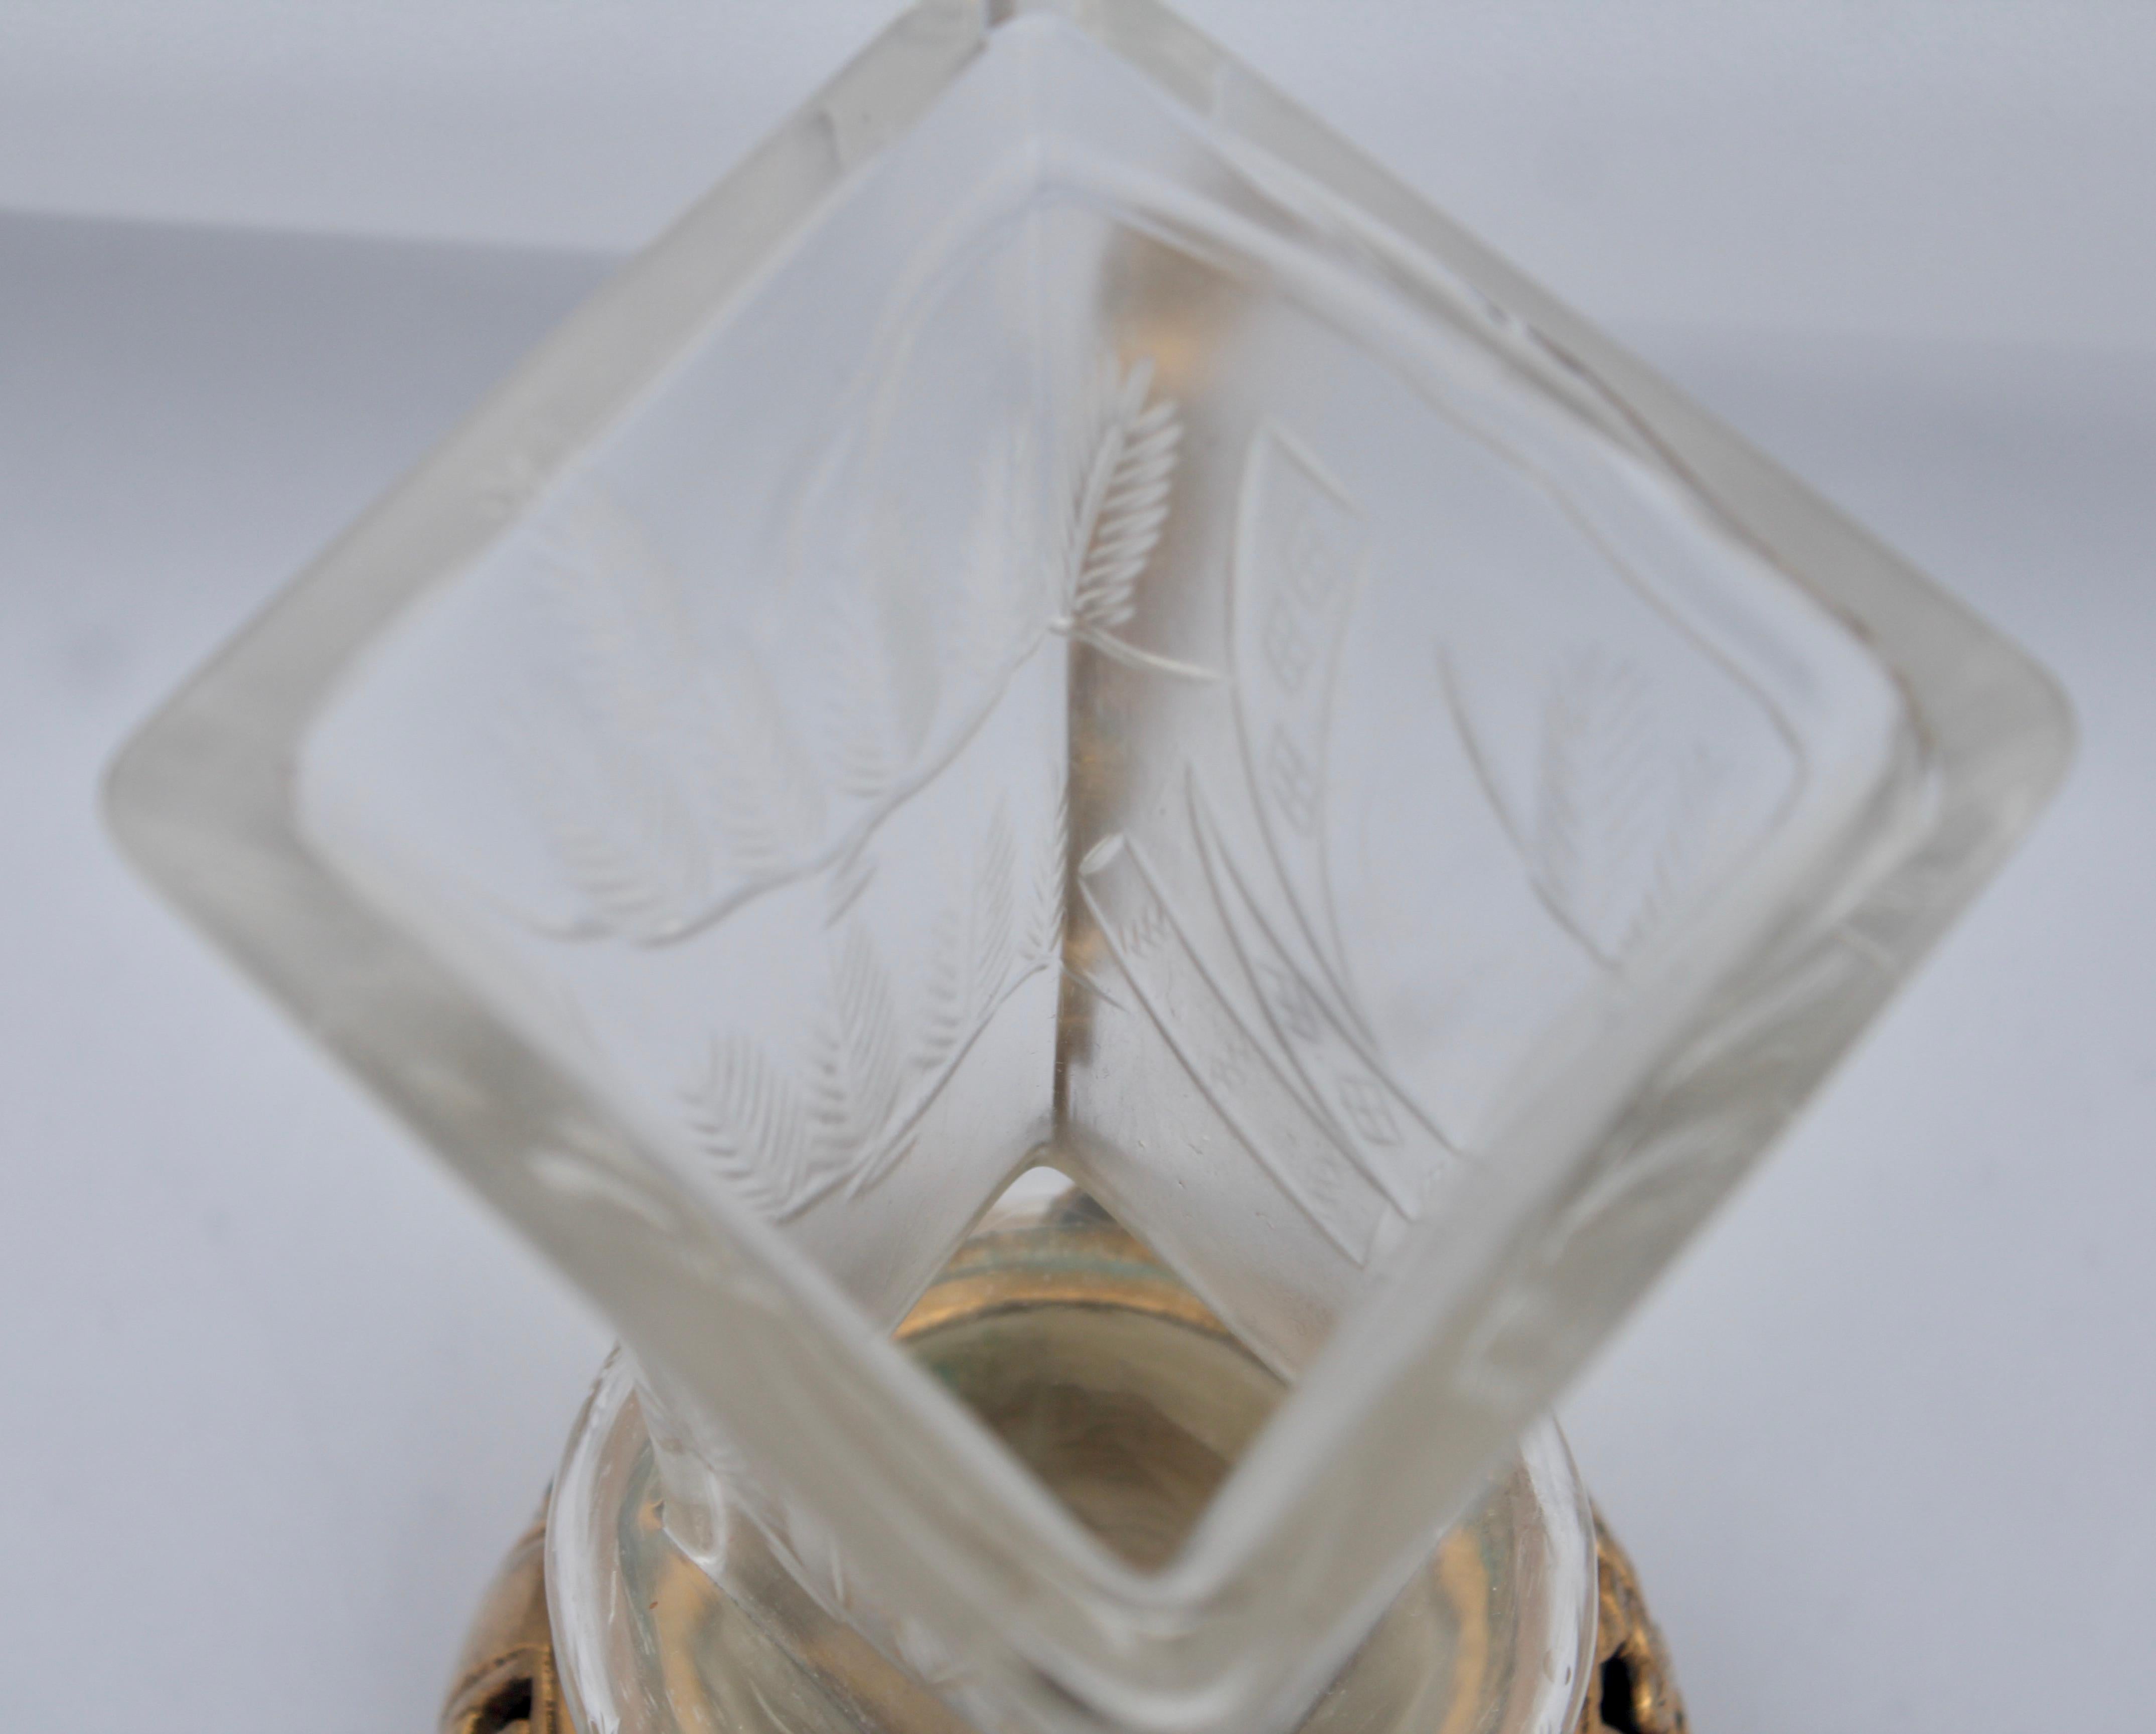 Japonisme Crystal Vase, Ormolu Mount by Maison Baccarat for Escalier De Cristal 1